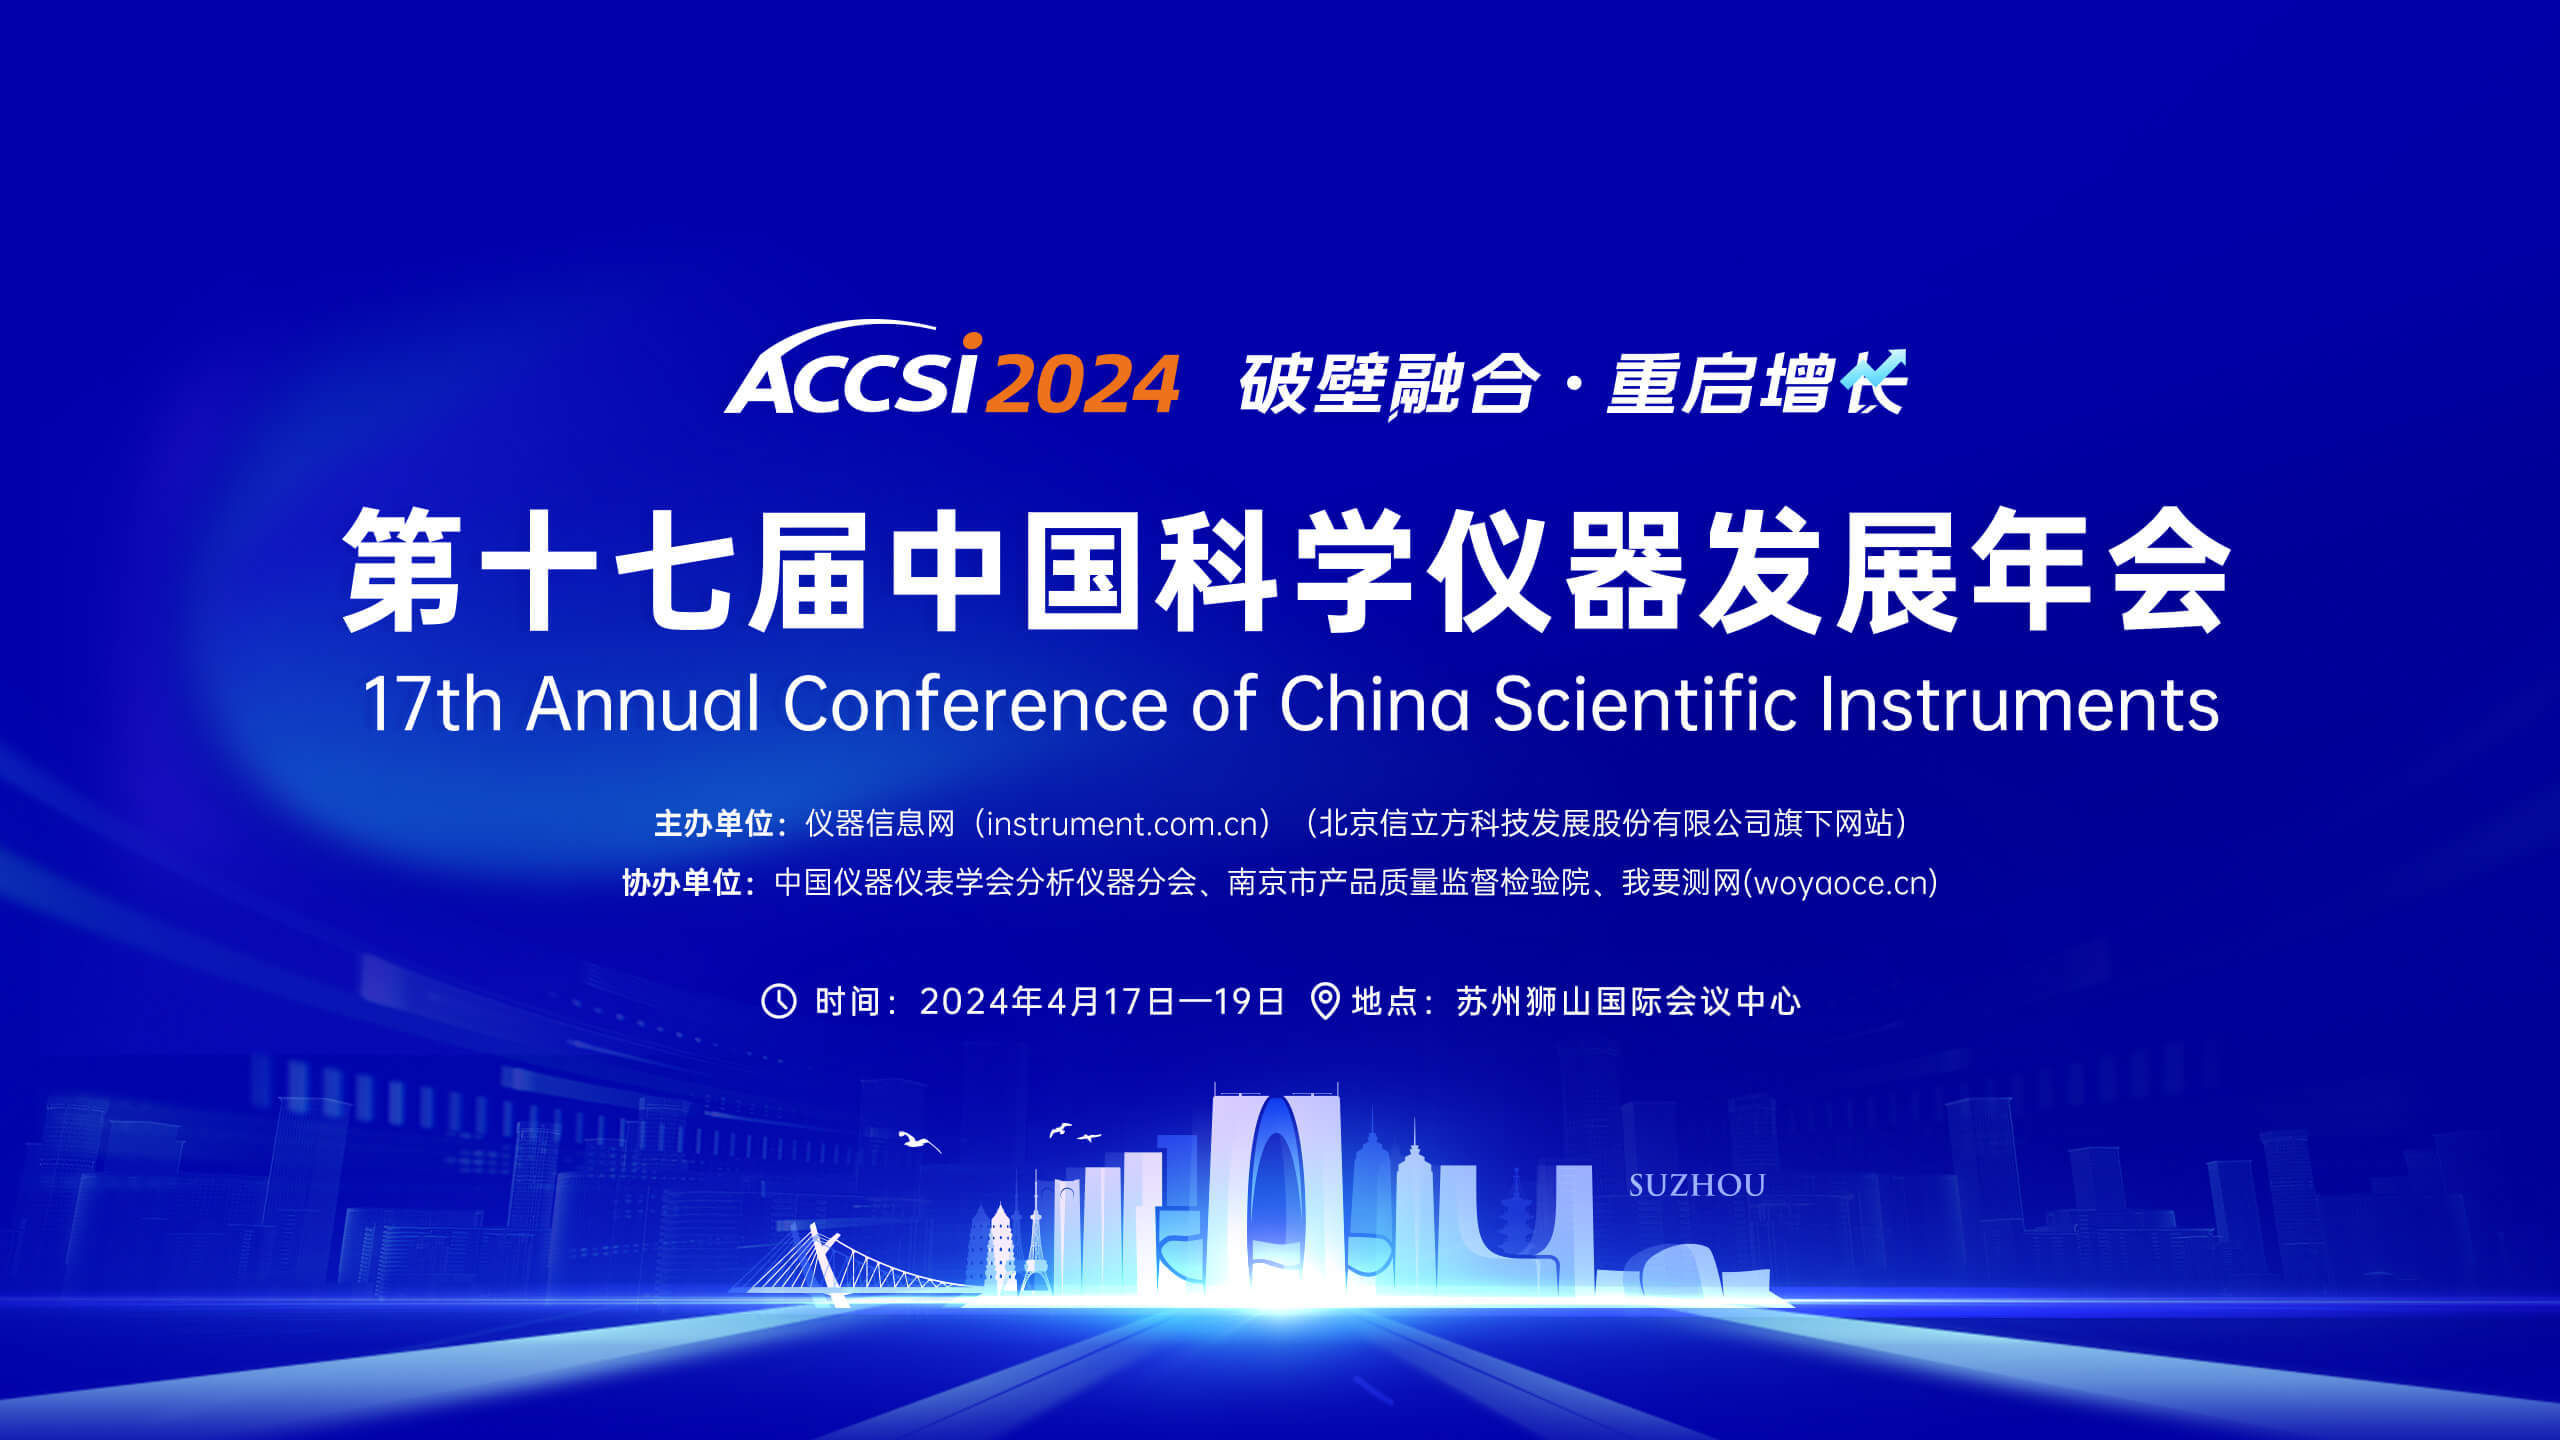 第十七届中国科学仪器发展年会将于4月17-19日在苏州举行